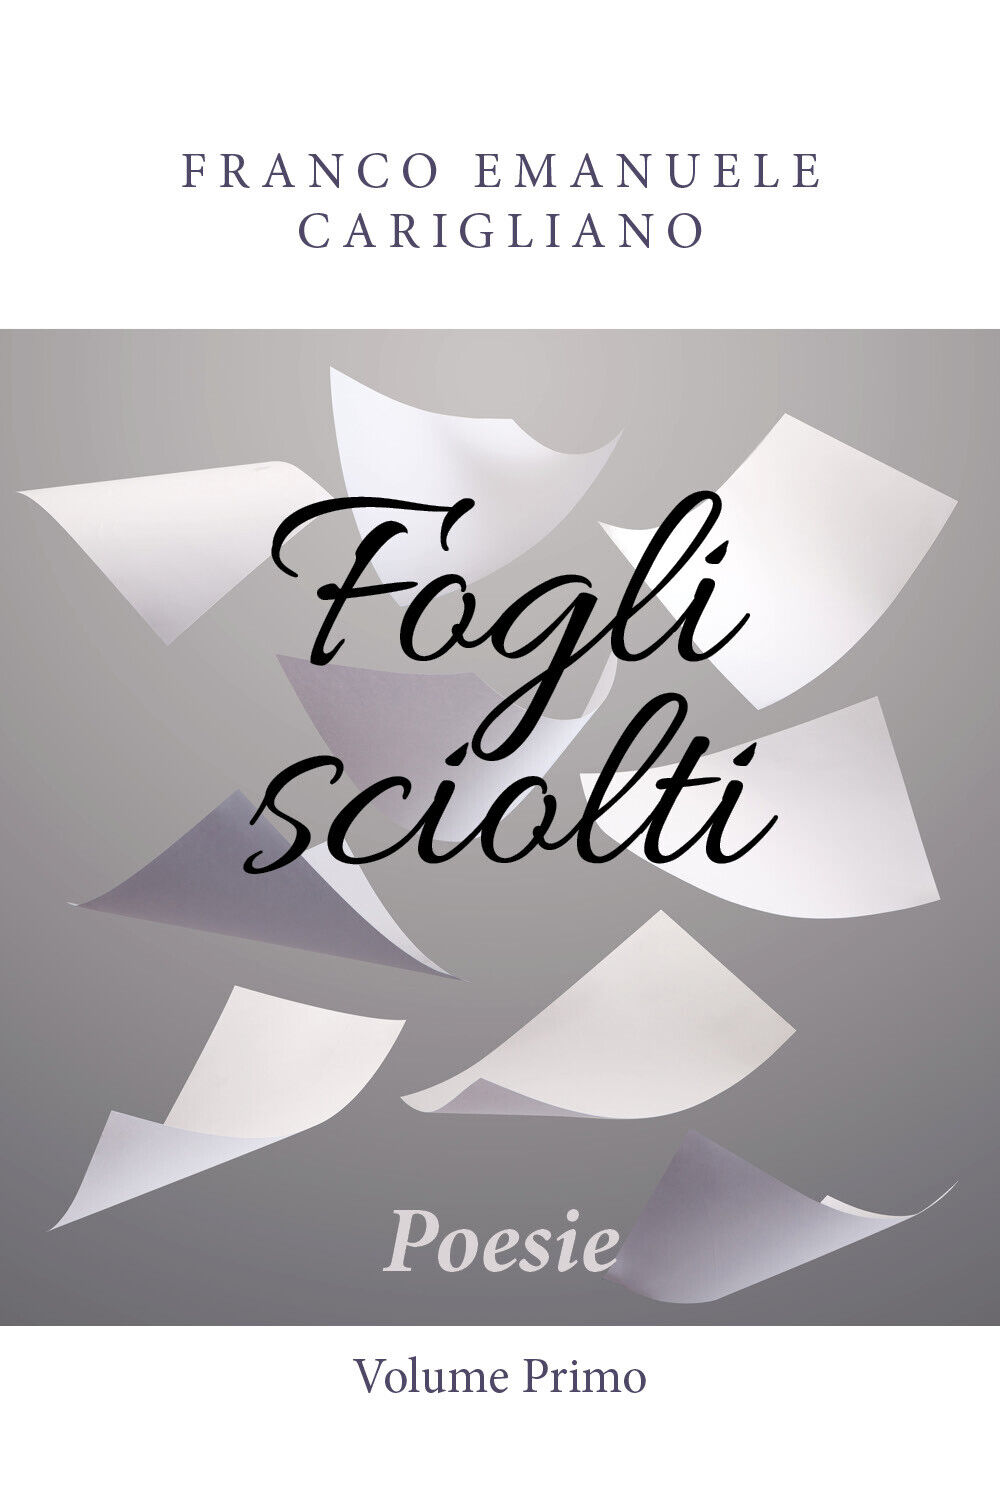 Fogli sciolti - Poesie - Volume Primo di Franco Emanuele Carigliano,  2018,  You